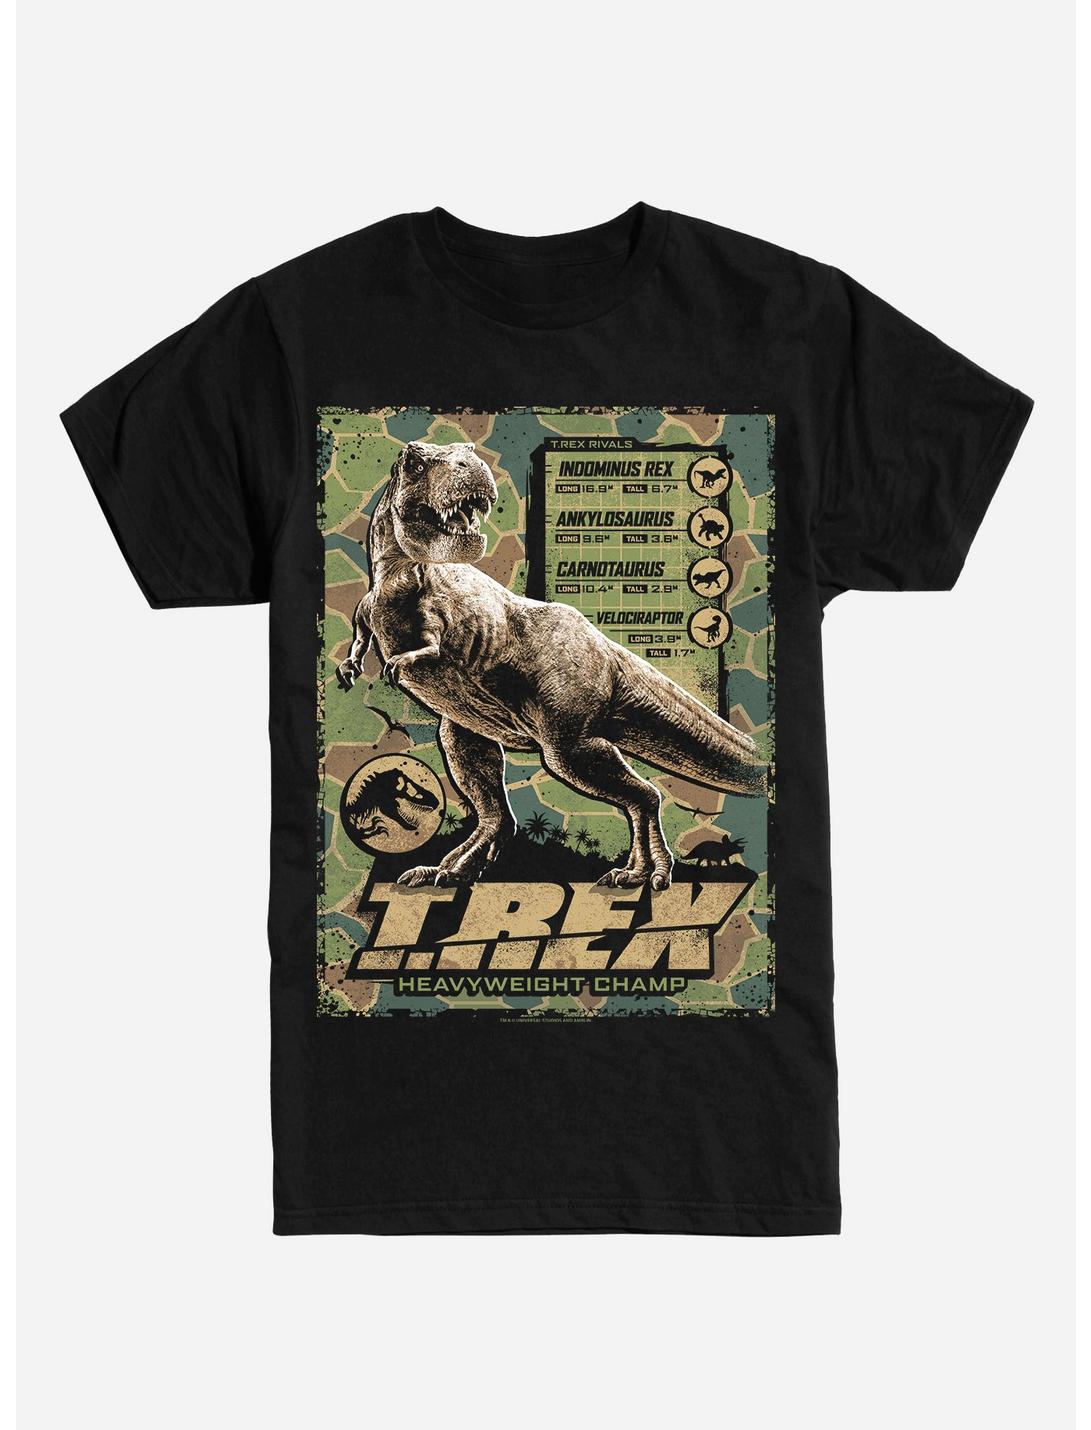 Jurassic World T-Rex Heavyweight Champ T-Shirt | BoxLunch